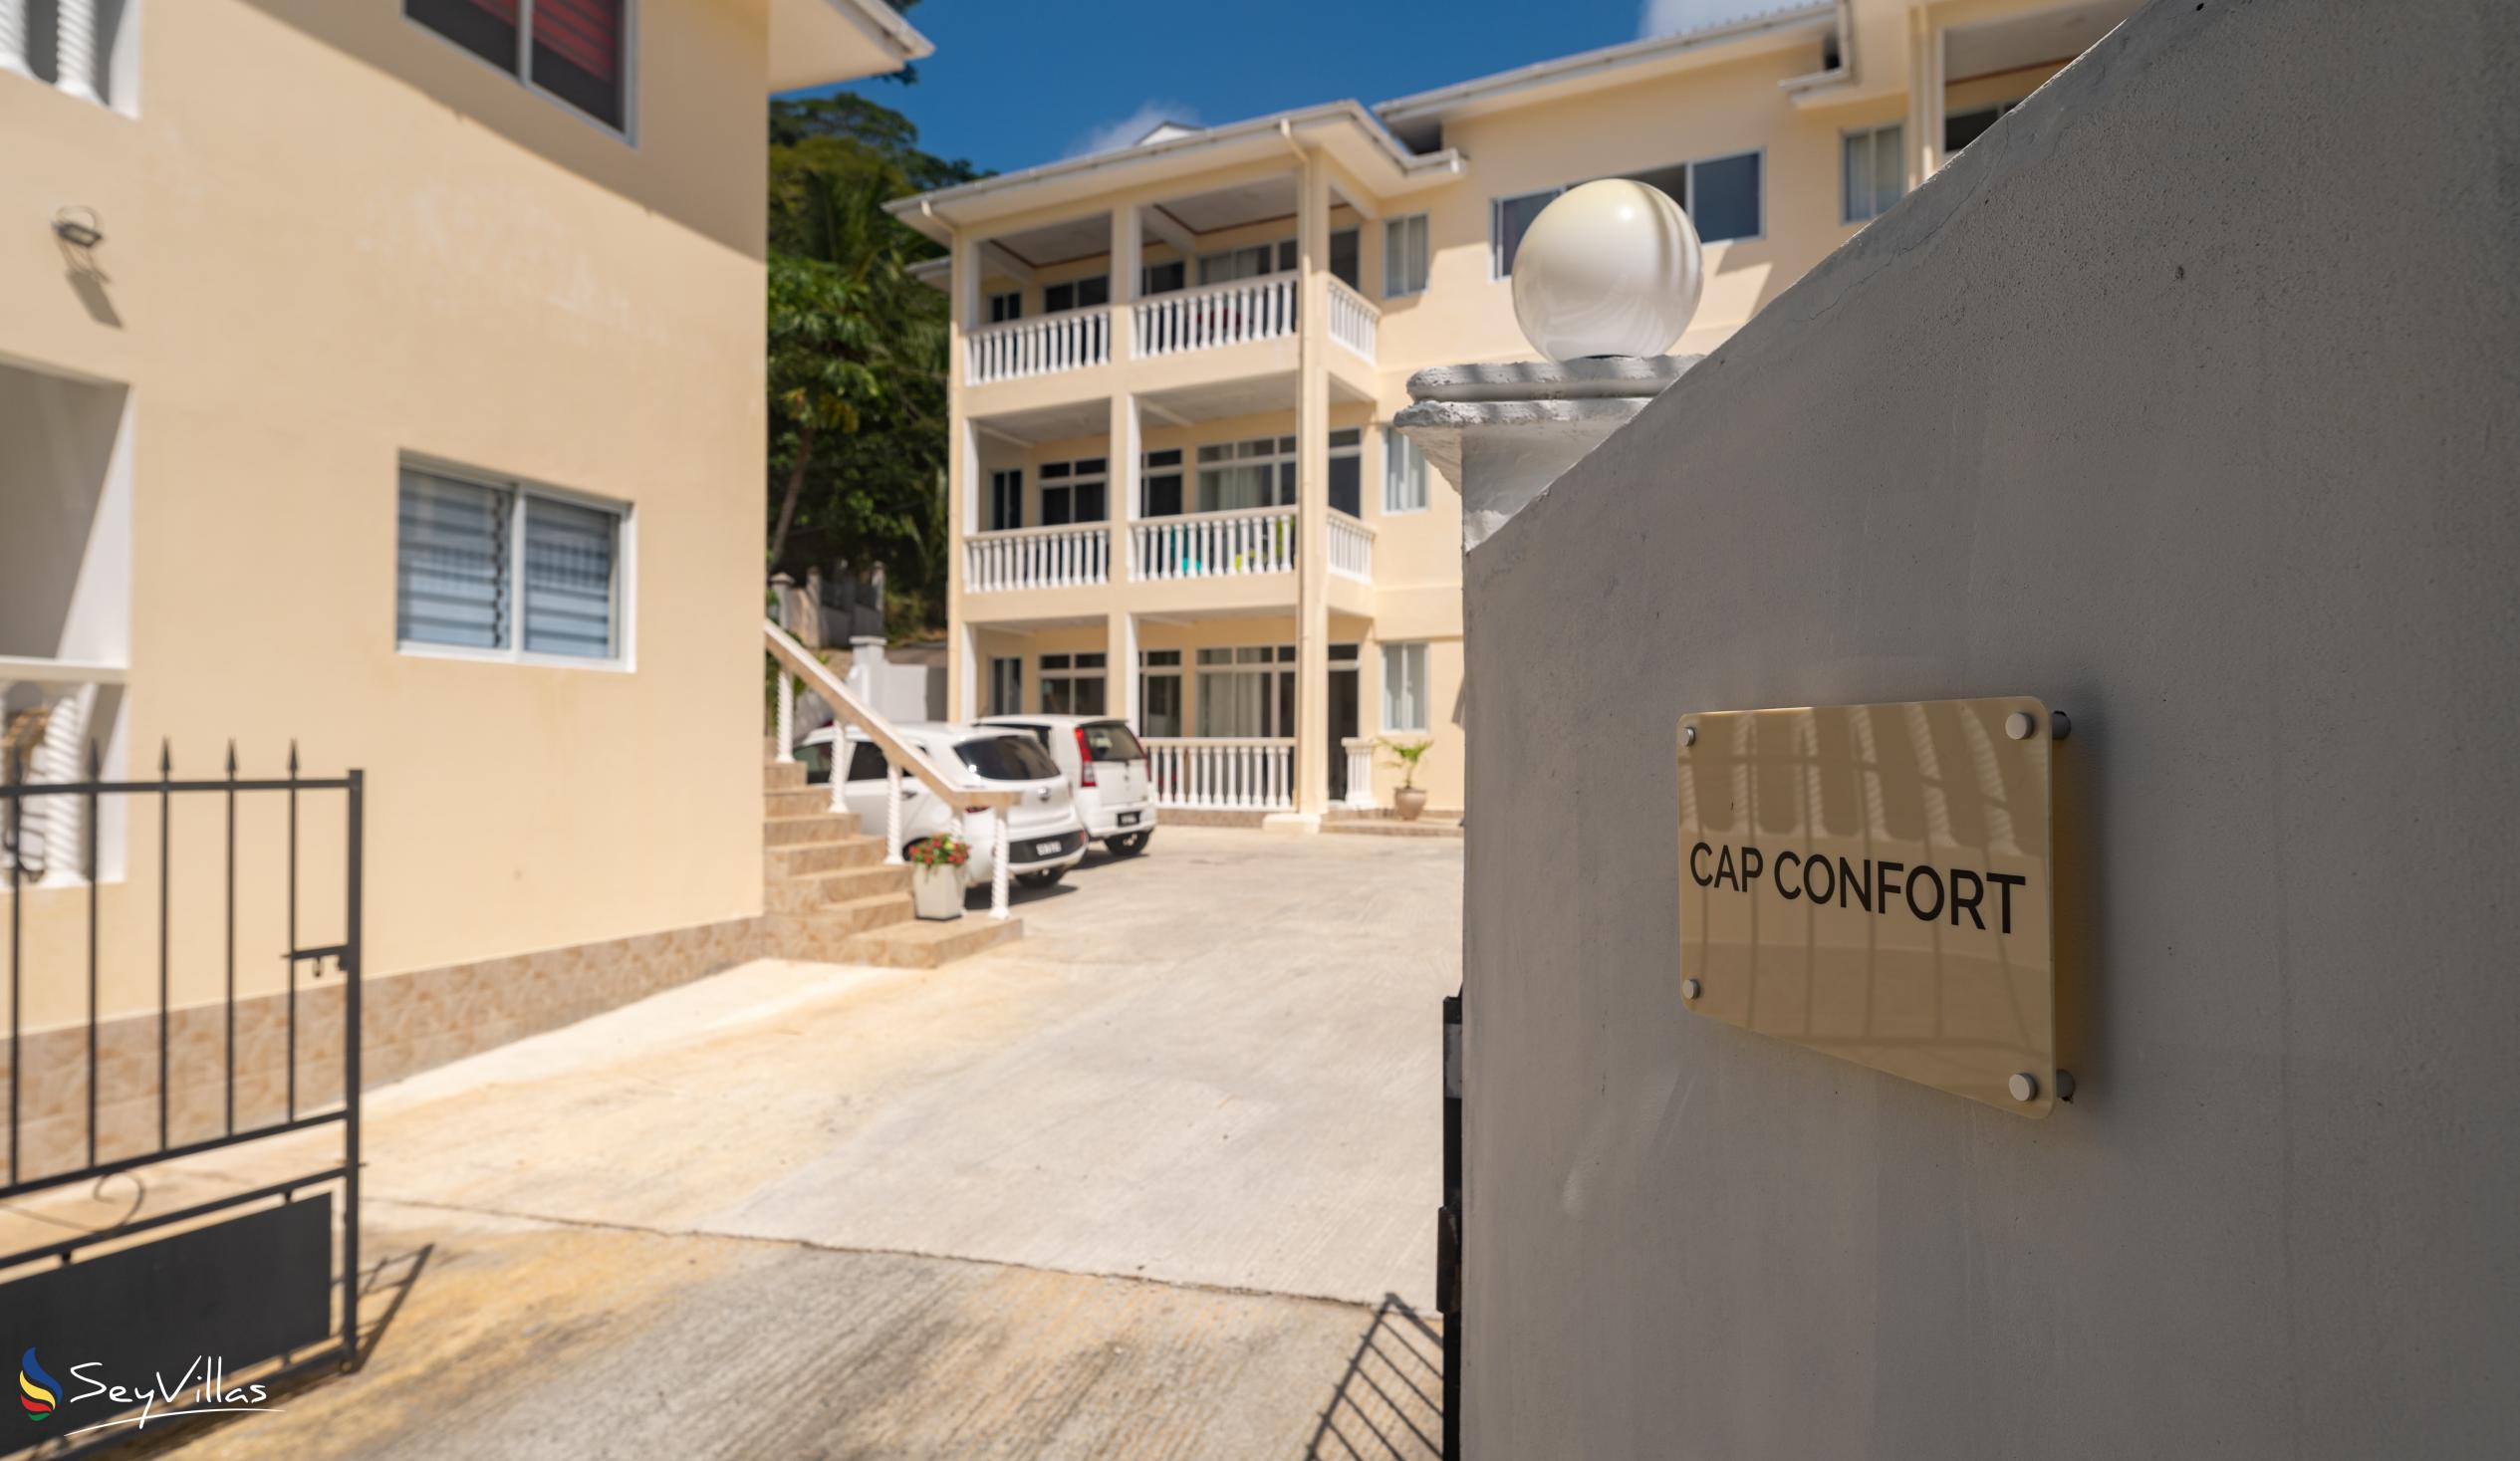 Foto 18: Cap Confort - Extérieur - Mahé (Seychelles)